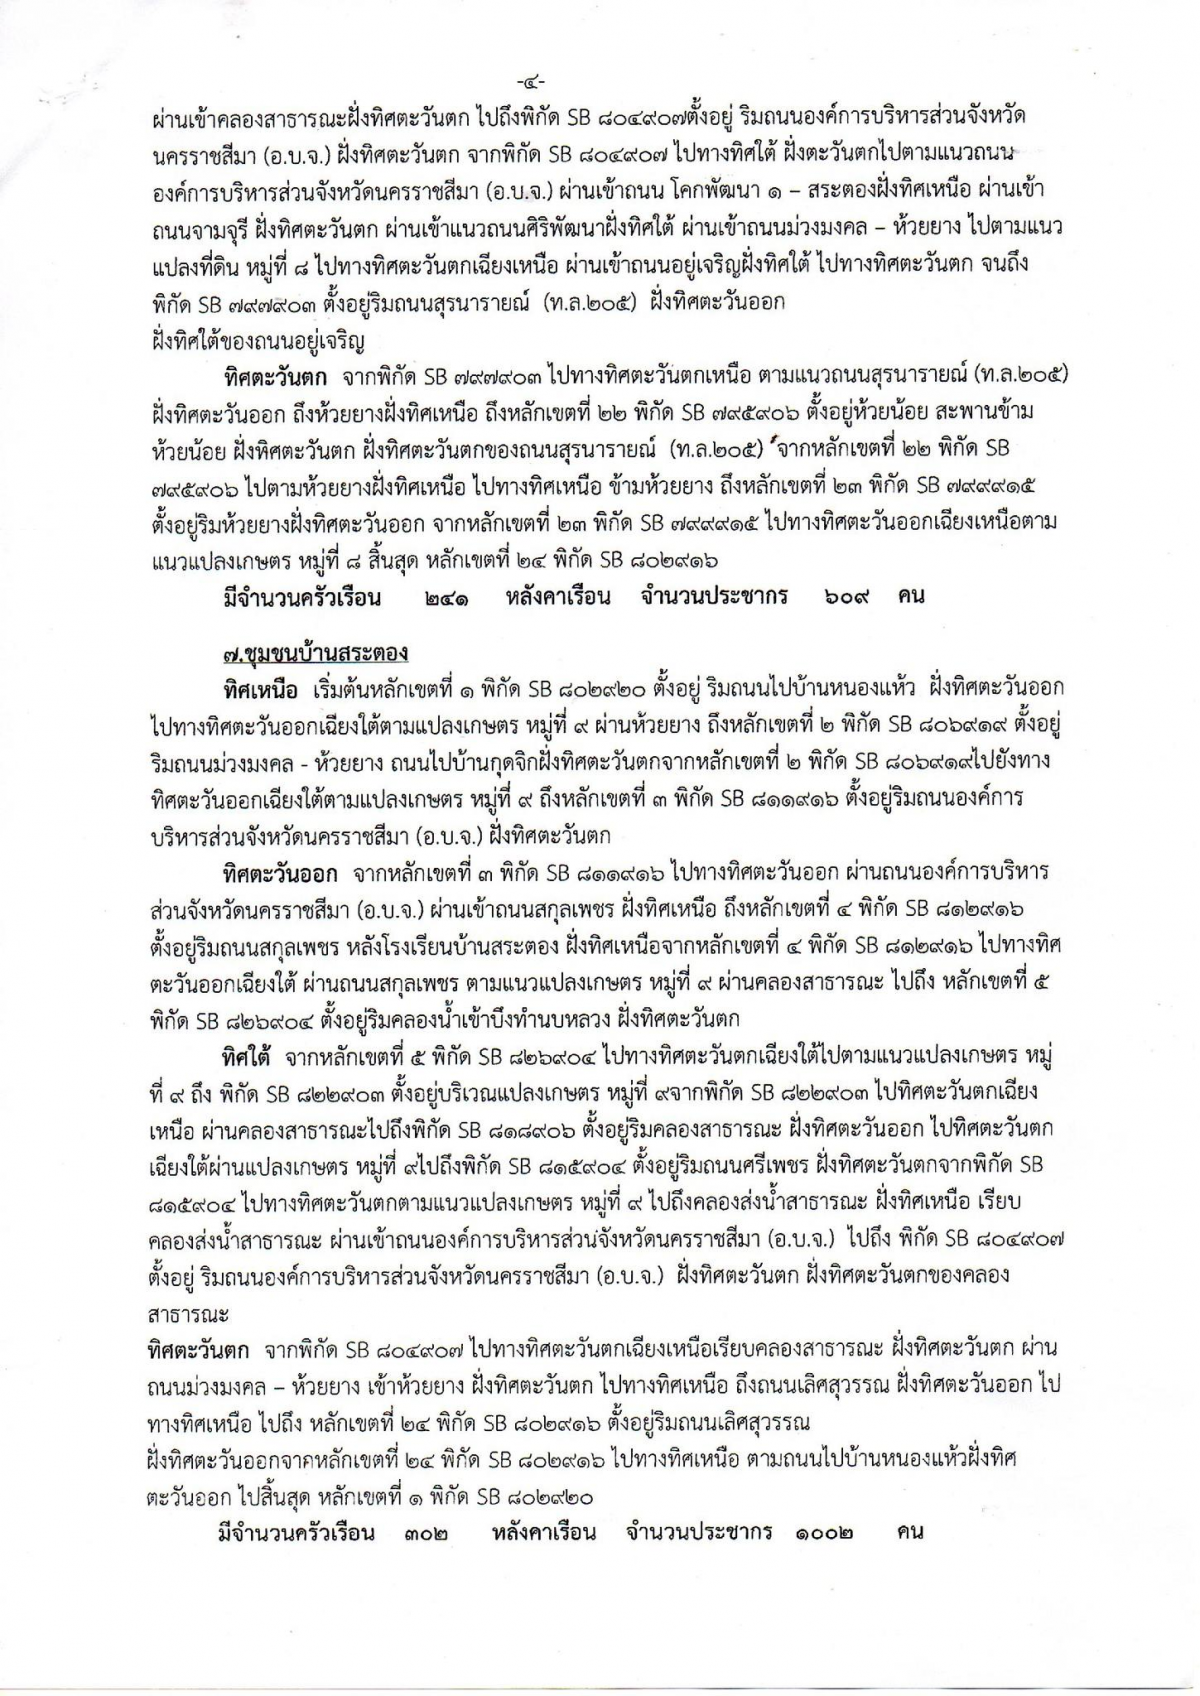 ประชาสัมพันธ์ ประกาศเทศบาลตำบลโคกสวาย เรื่องการจัดตั้งชุมชน อาศัยอำนาจตามความในข้อ 5 แห่งระเบียบกระทรวงมหาดไทยว่าด้วยคณะกรรมการชุมชนของเทศบาล พ.ศ. 2564 แก้ไขเพิ่มเติมถึง (ฉบับที่ 2) พ.ศ. 2566 เทศบาลตำบลโคกสวาย